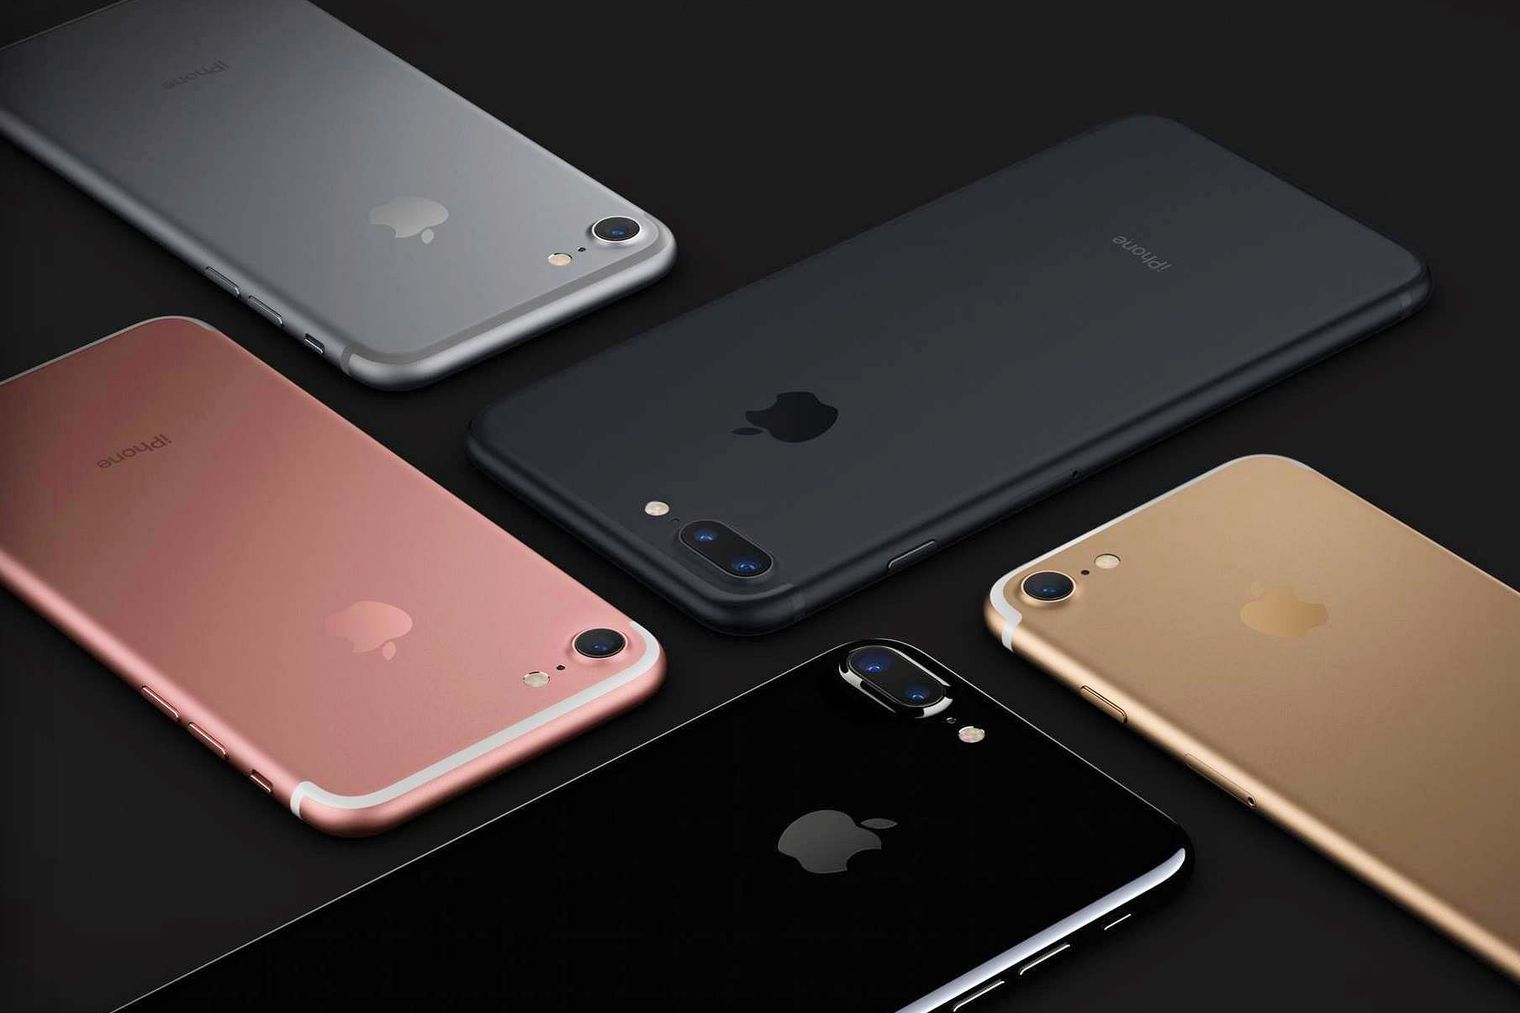 Godt hjulpet av iPhone 7 solgte Apple 800 000 flere enheter enn Samsung i fjerde kvartal 2016.